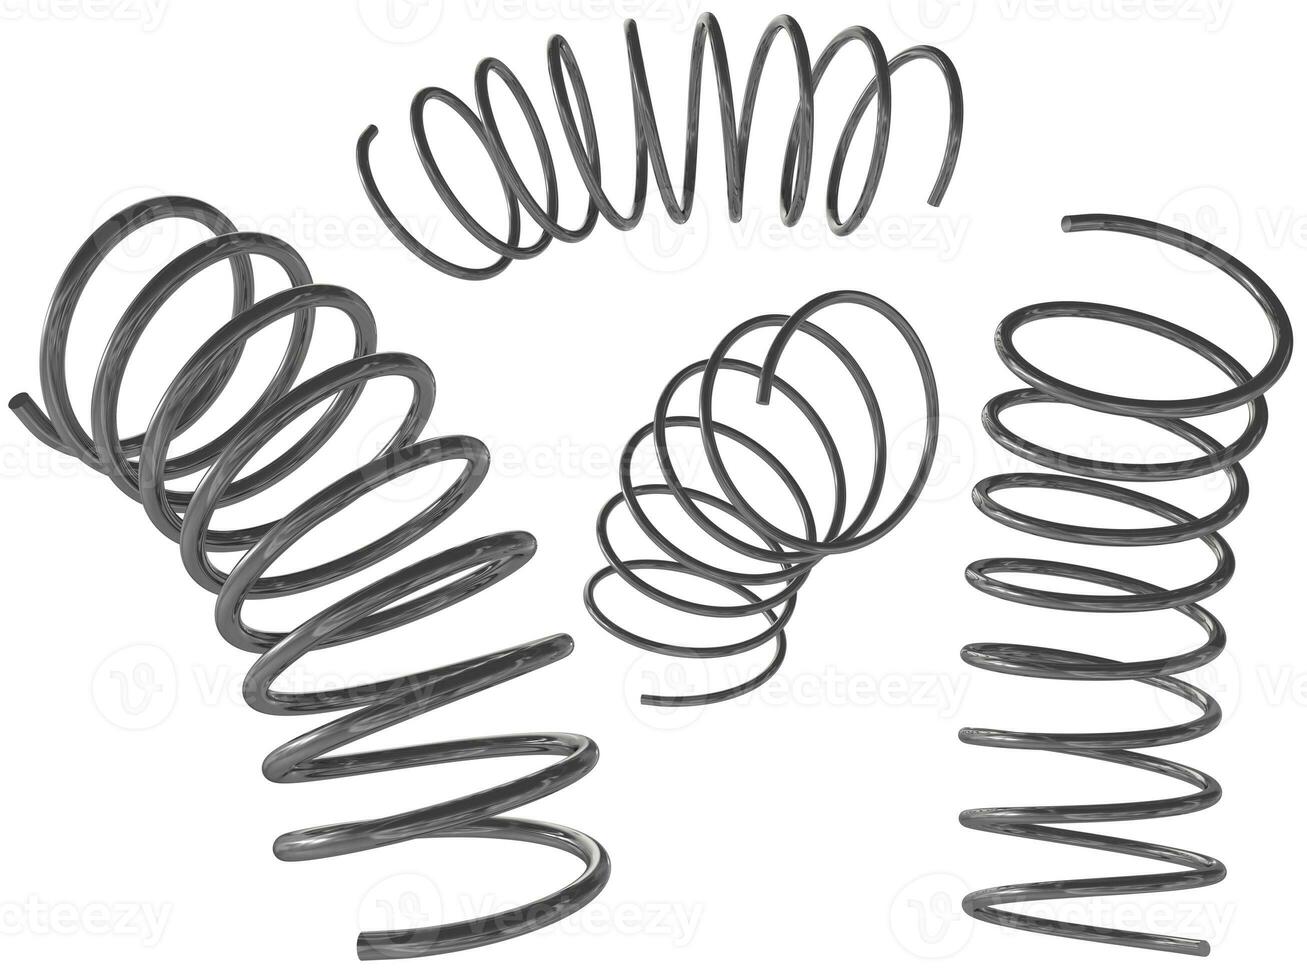 3d rendering of metal set of springs photo